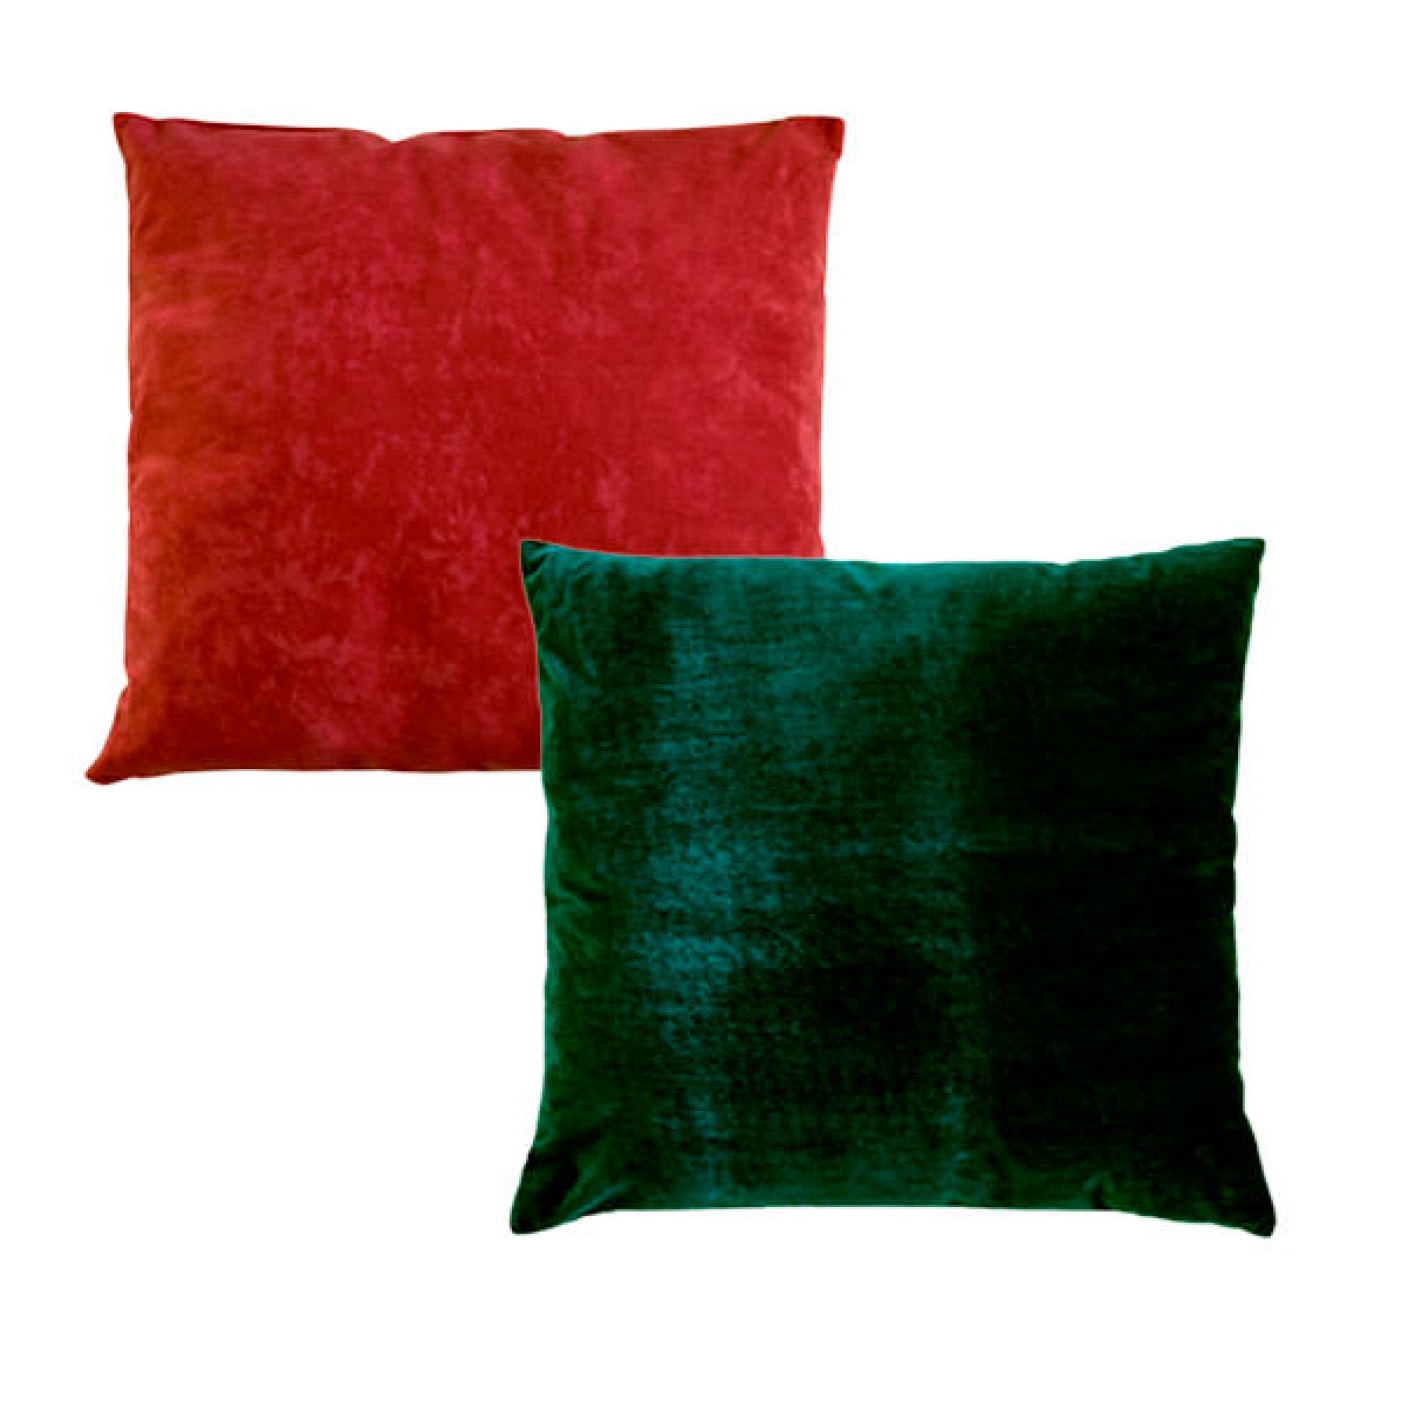 almofada decorativa vermelha e verde